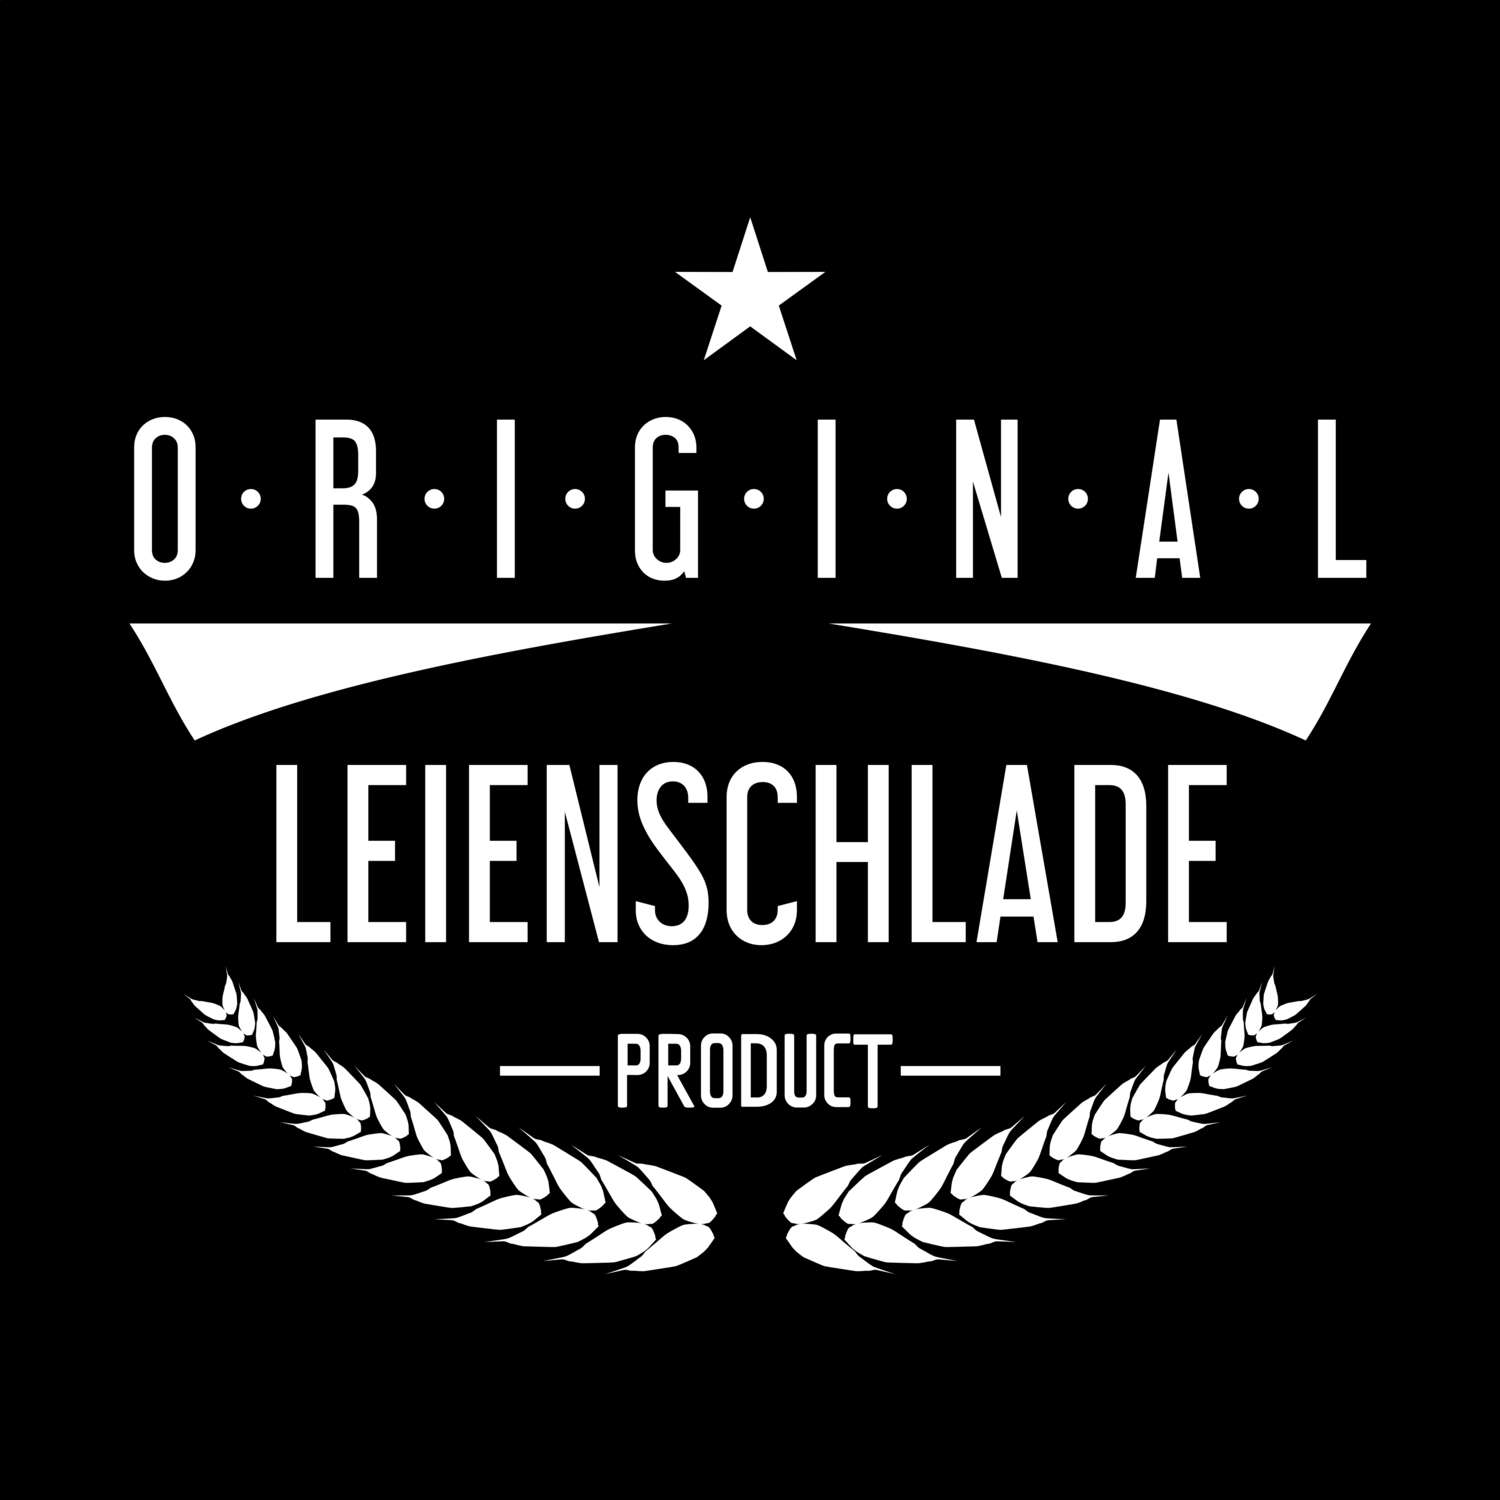 Leienschlade T-Shirt »Original Product«